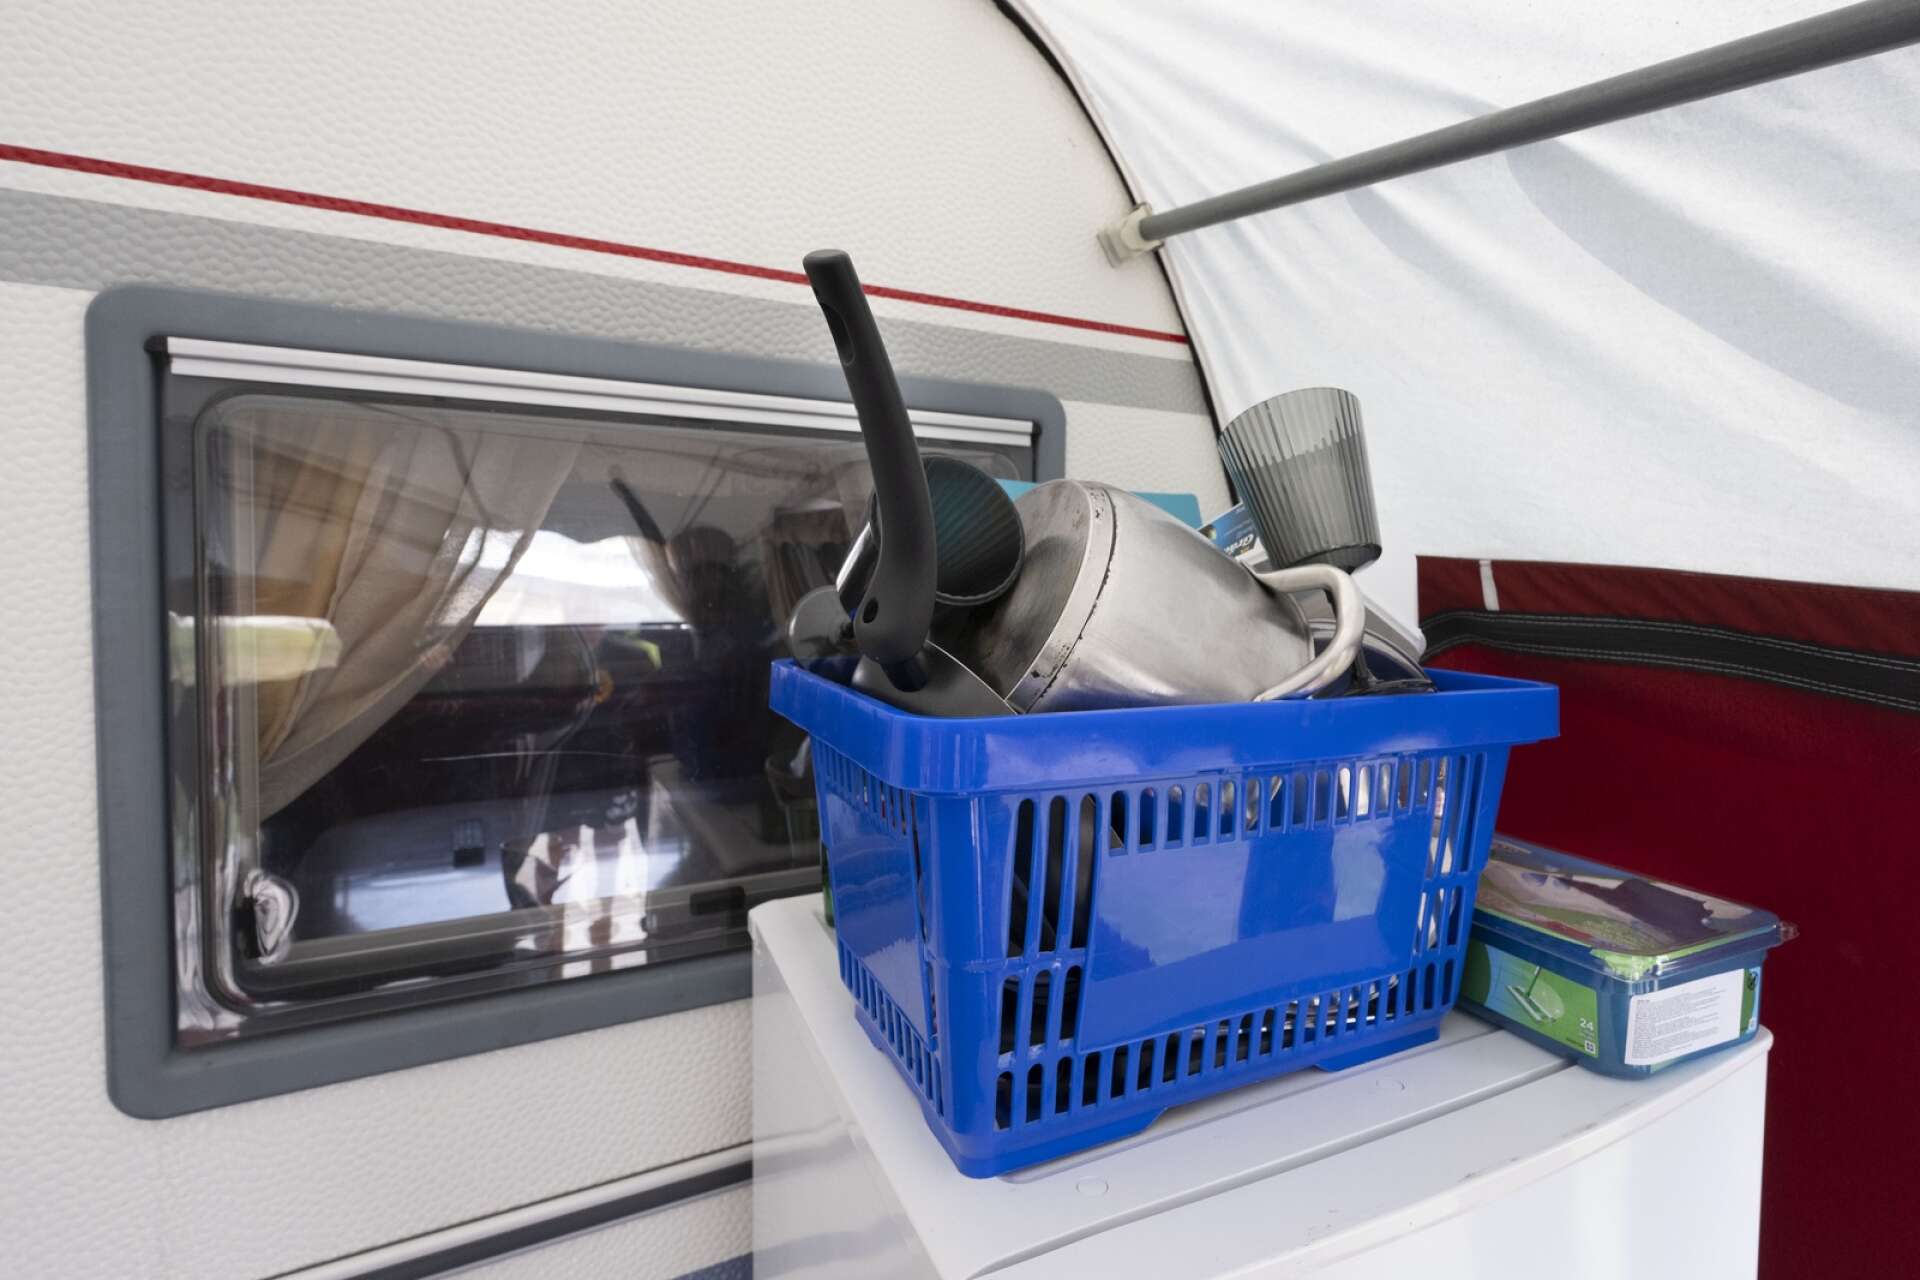 Vill man duscha, diska eller tvätta kläder får man gå bort till det gemensamma servicehuset på campingen.